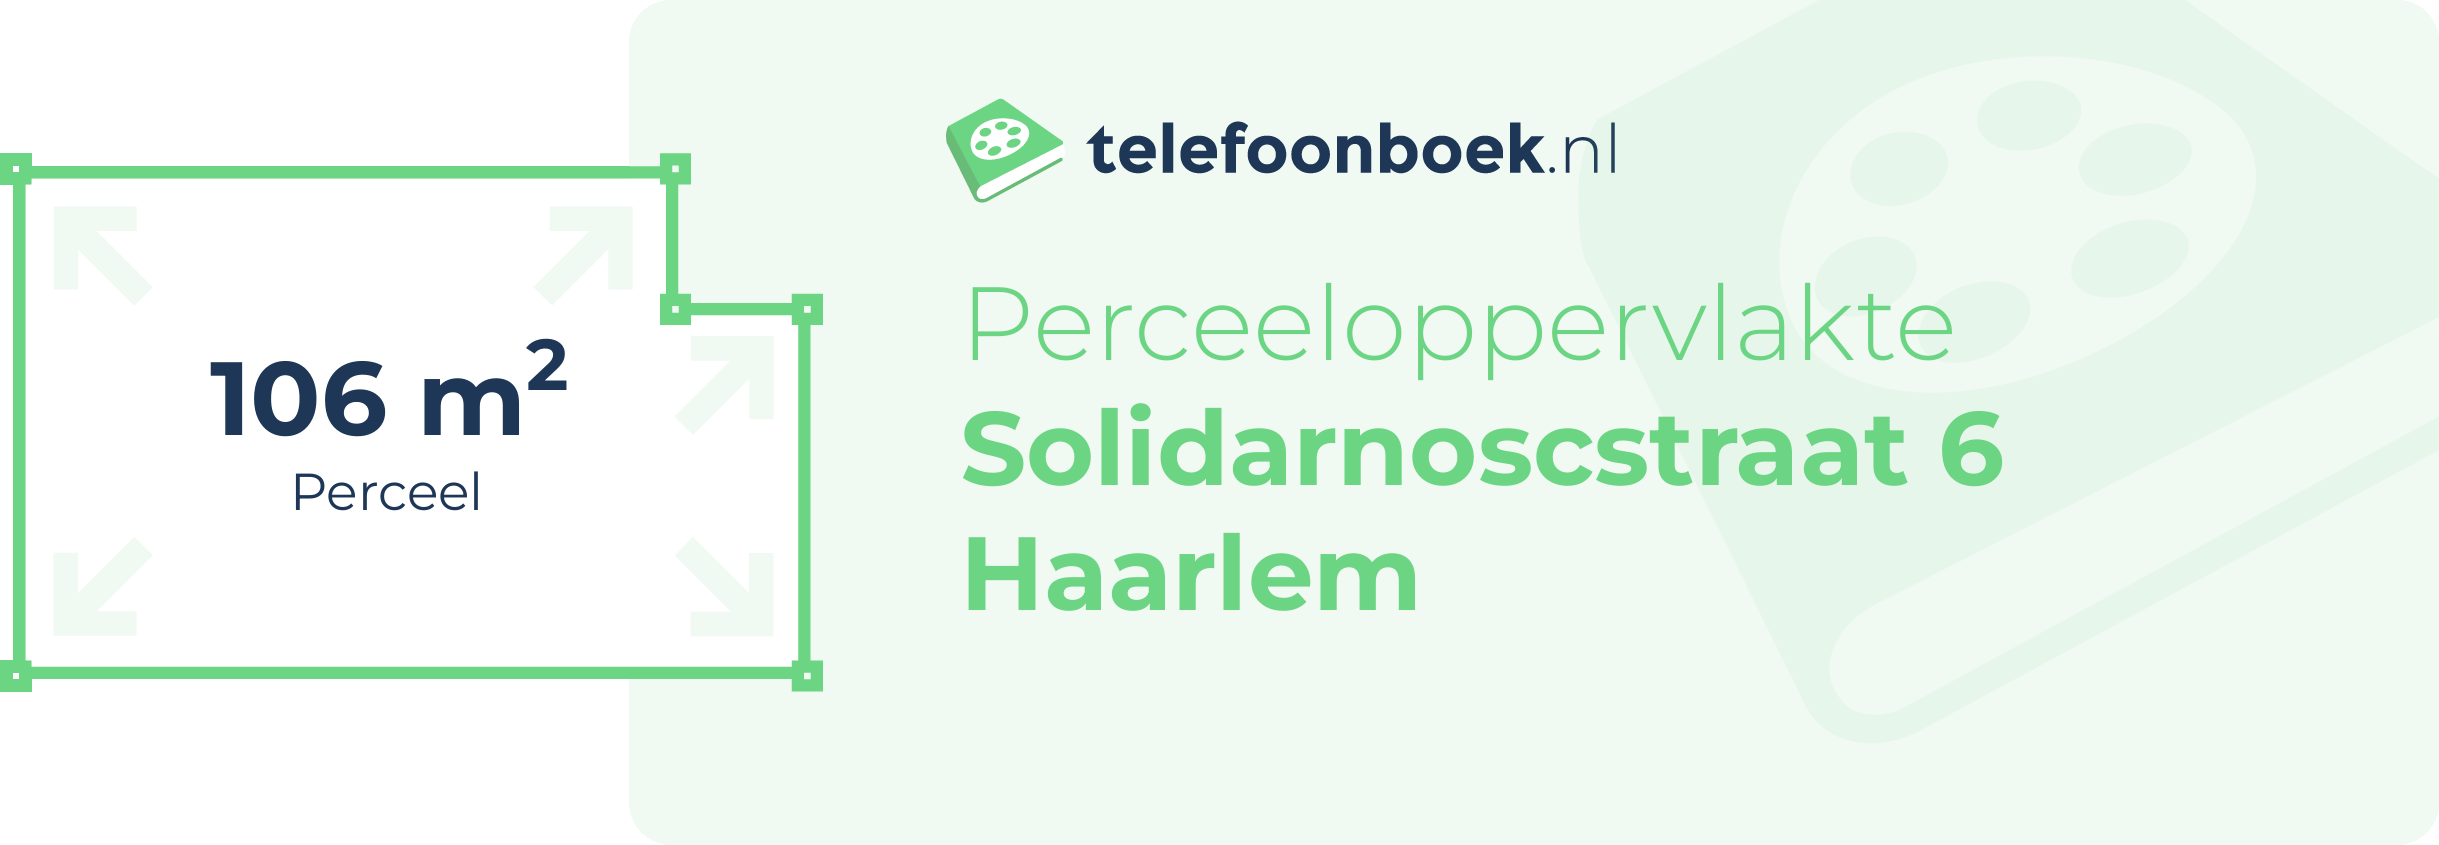 Perceeloppervlakte Solidarnoscstraat 6 Haarlem